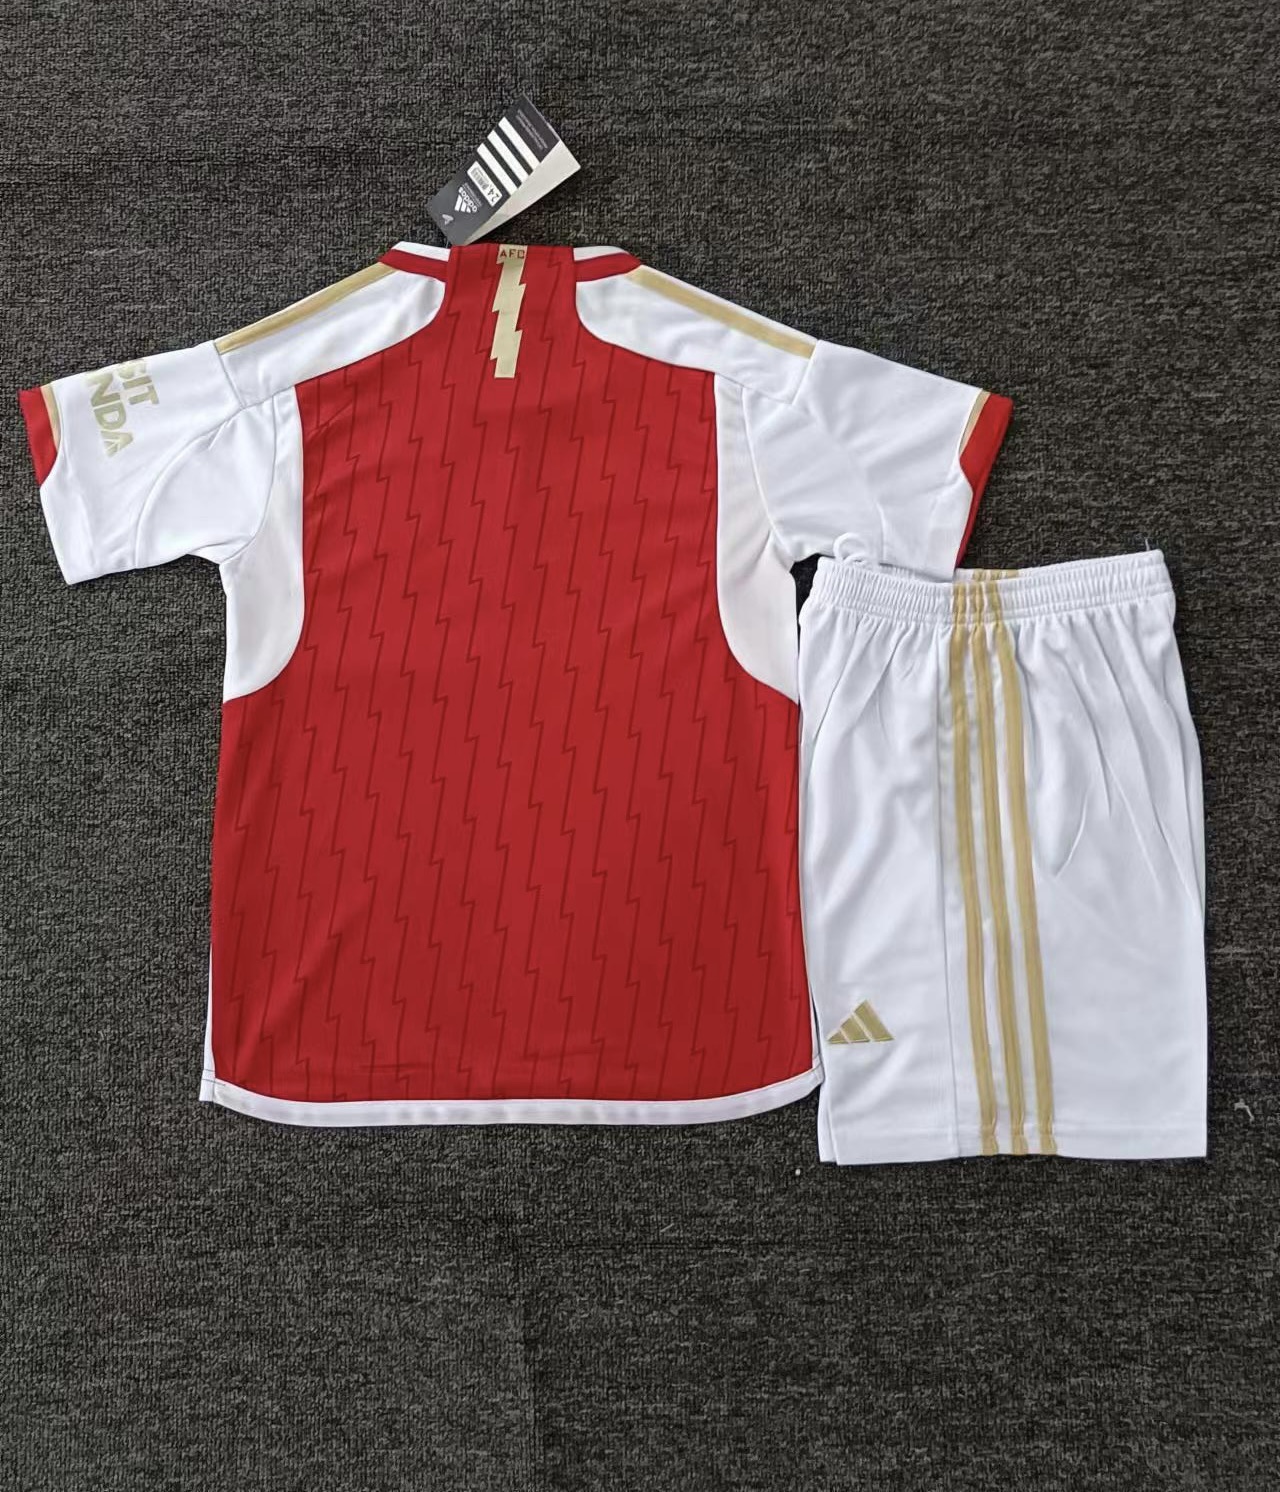 Arsenal junior kit